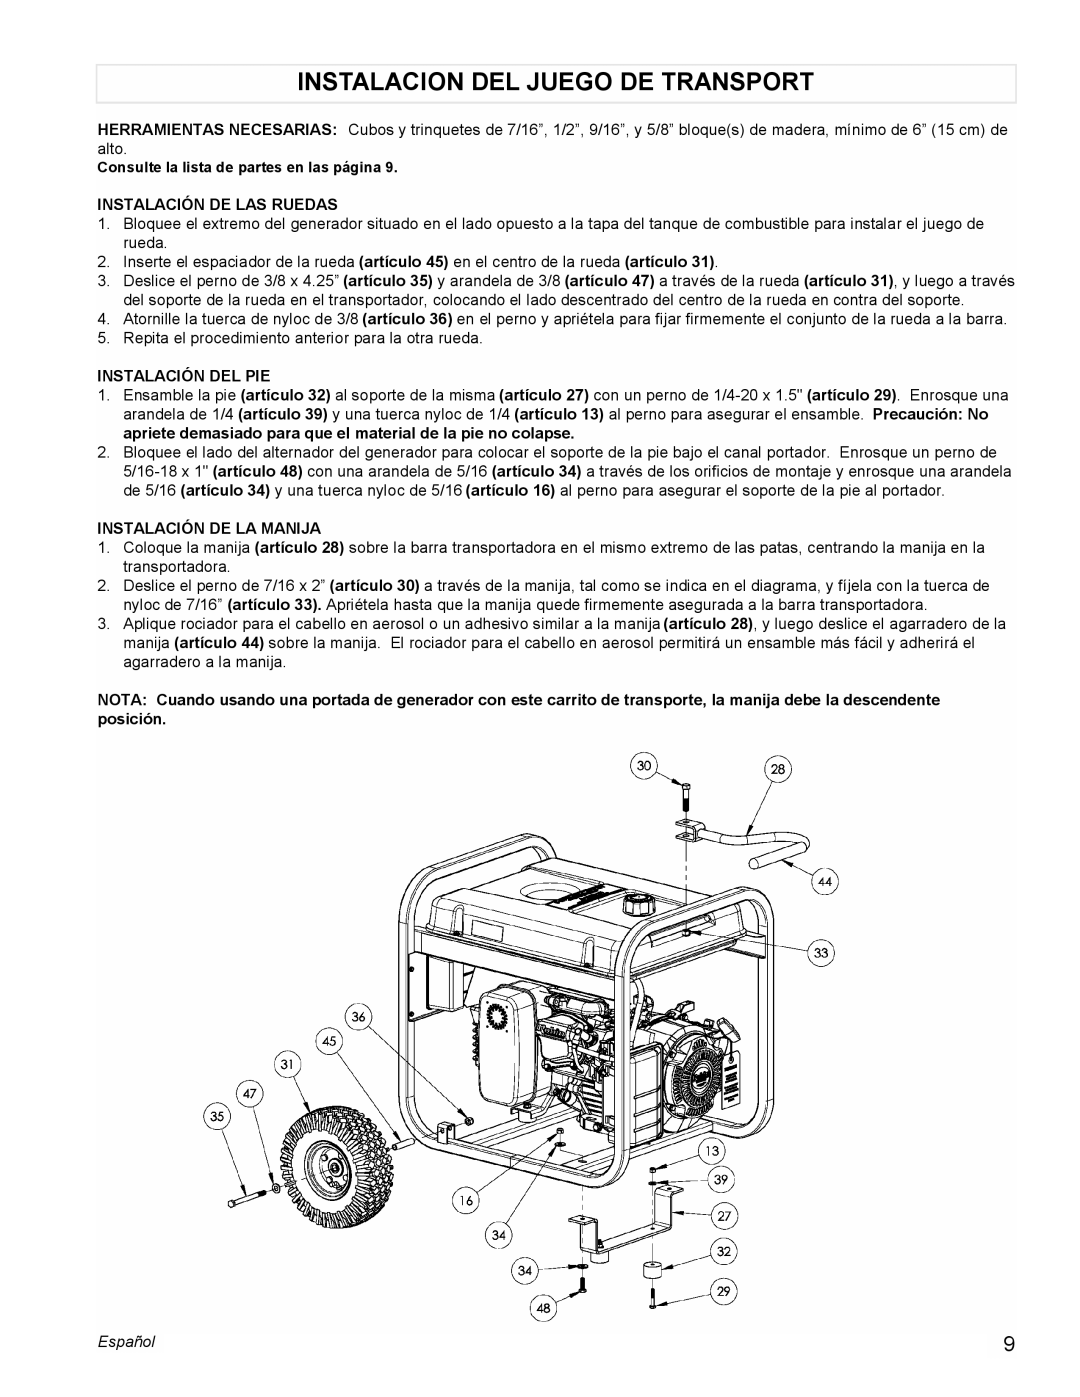 Powermate PMC435250 manual Instalacion Del Juego De Transport, Instalación De Las Ruedas, Instalación Del Pie, Español 